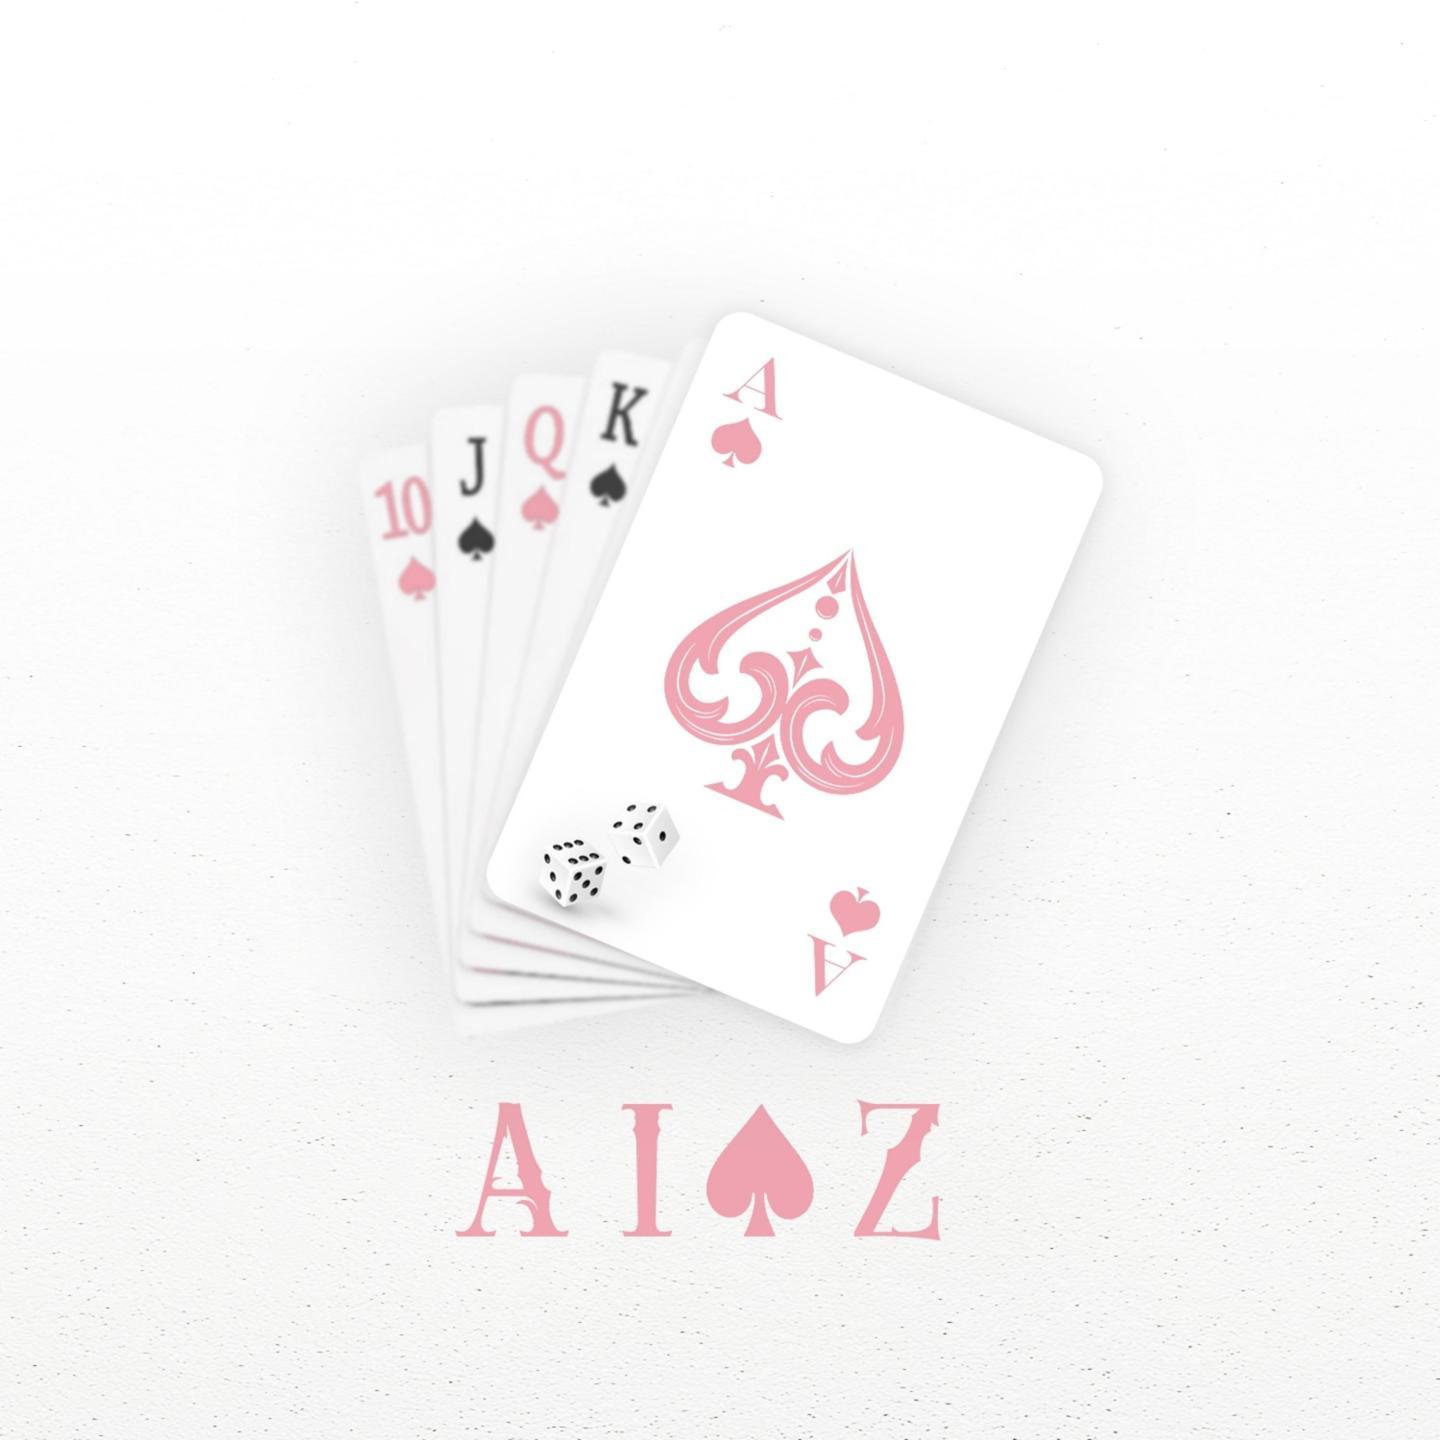 Aioz - 小说